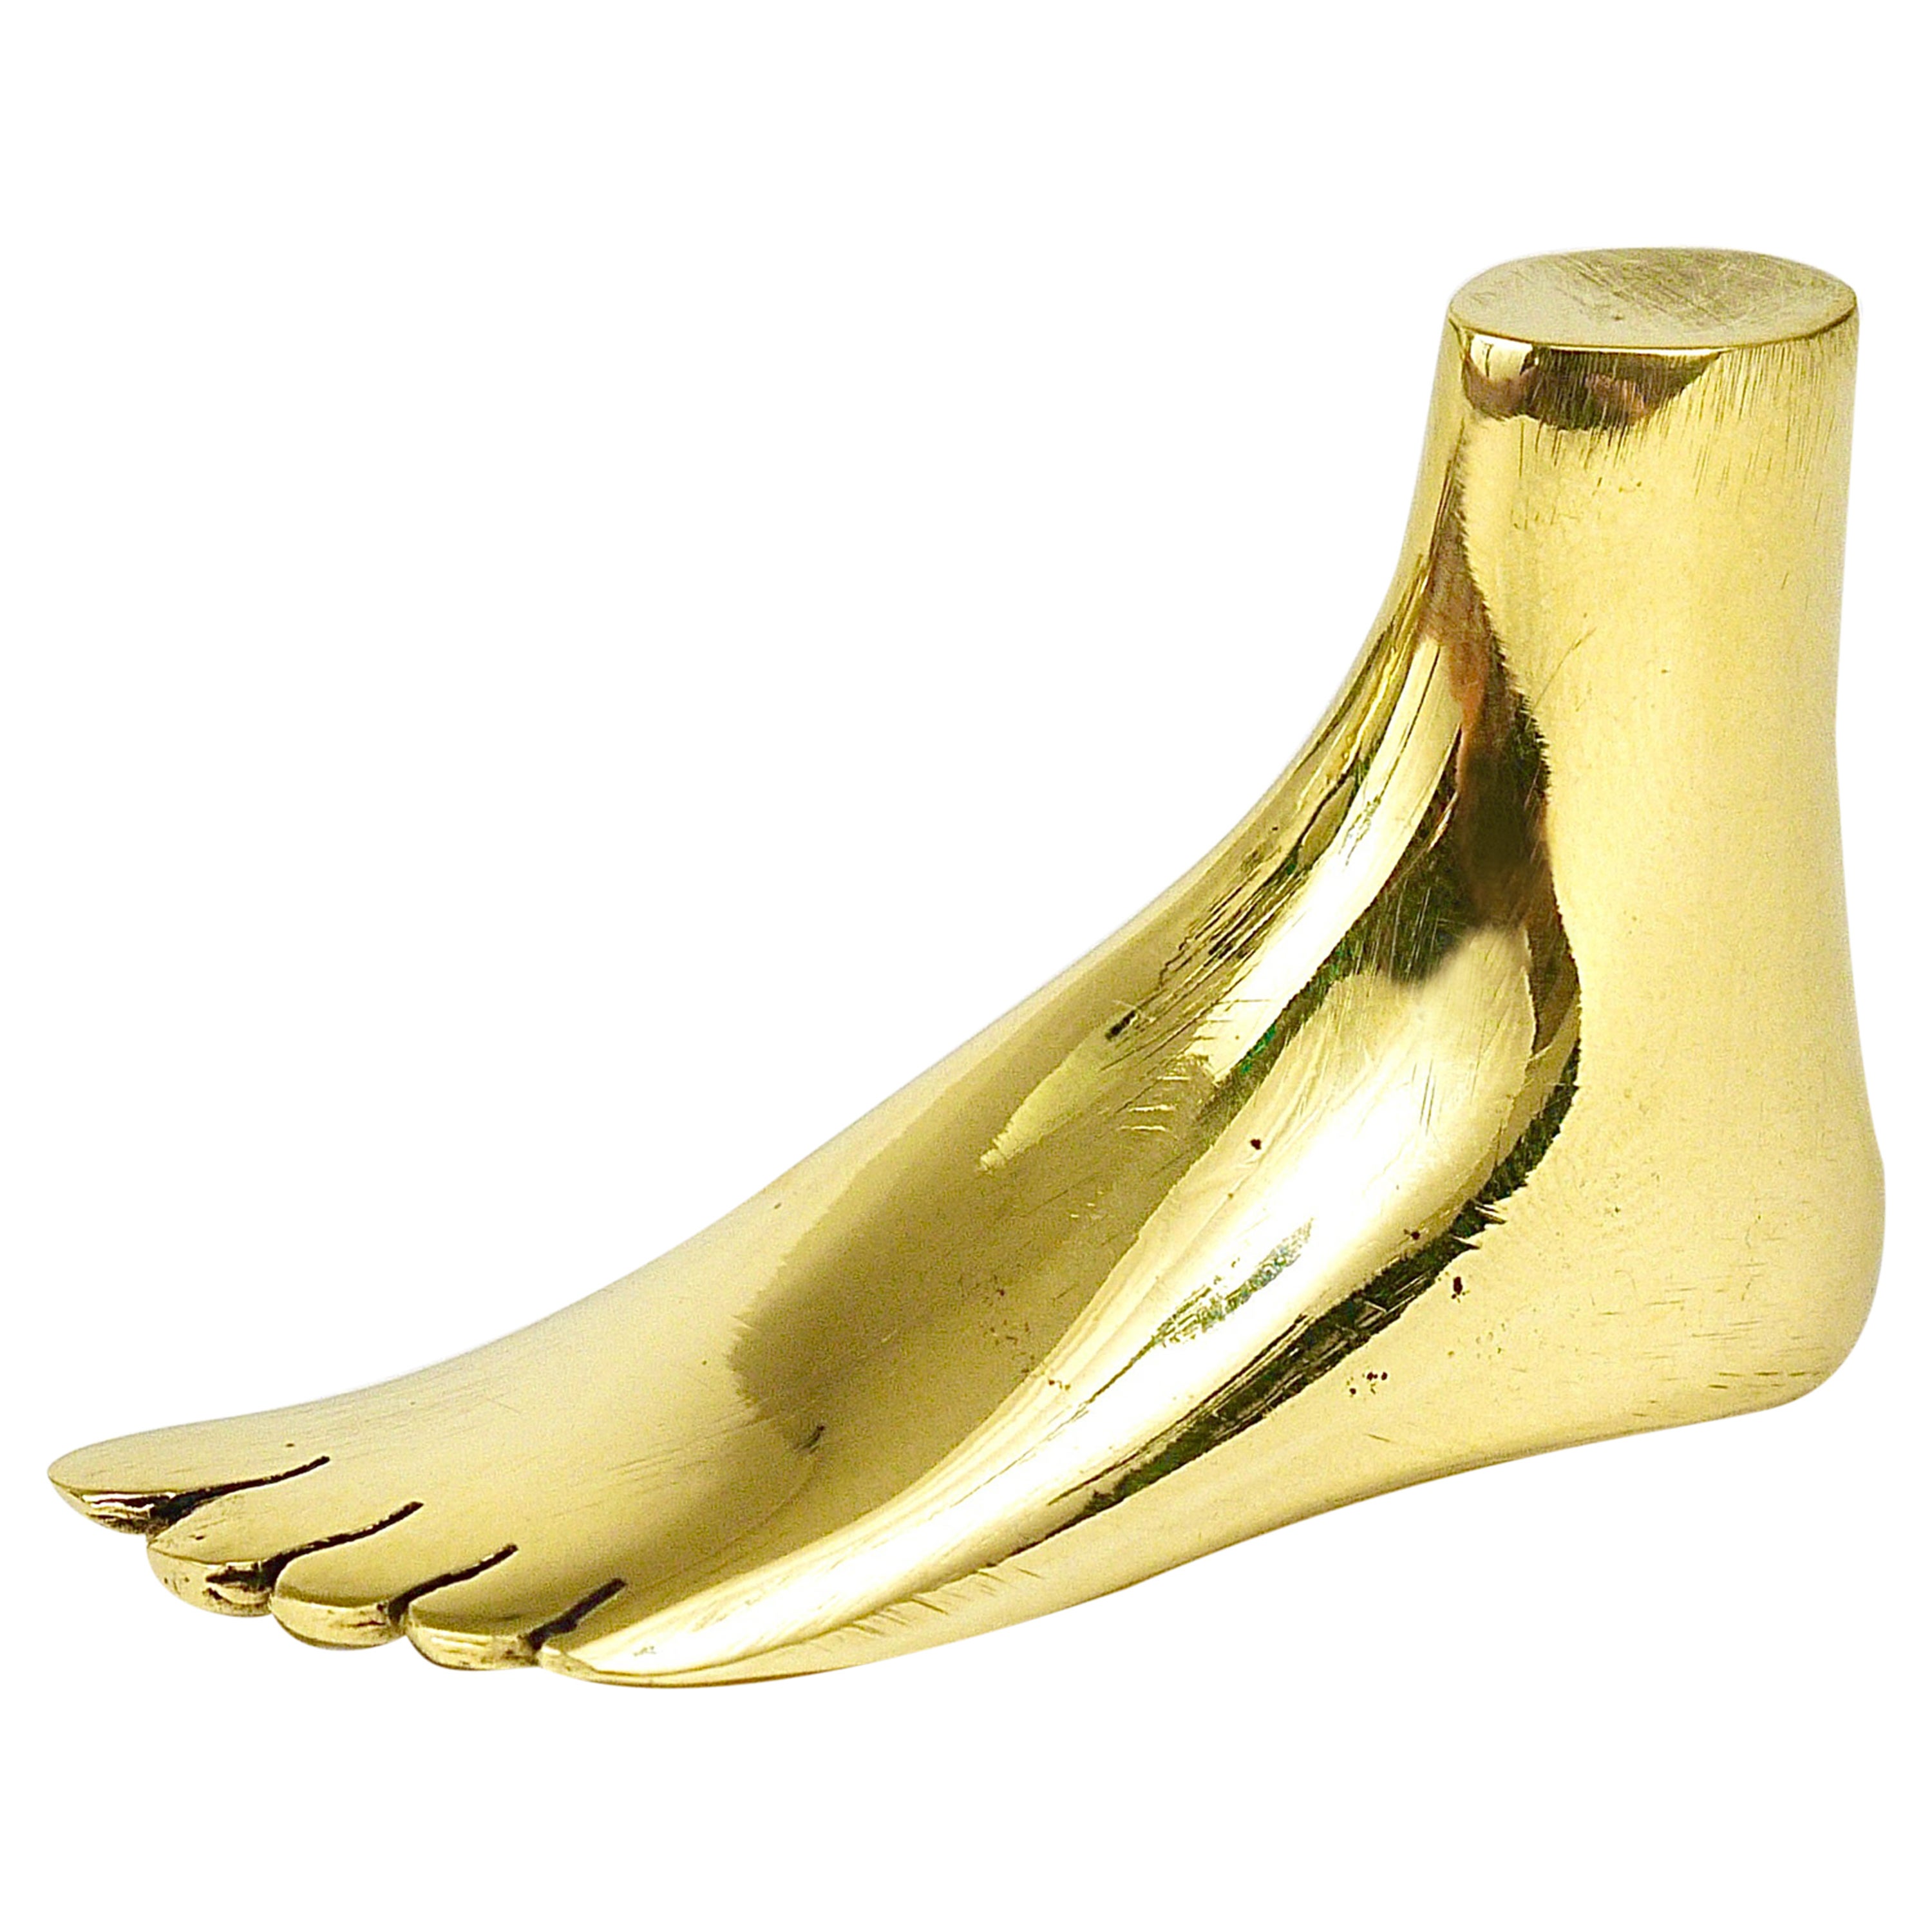 Signed Carl Auböck Midcentury Brass Foot Paperweight Handmade Sculpture